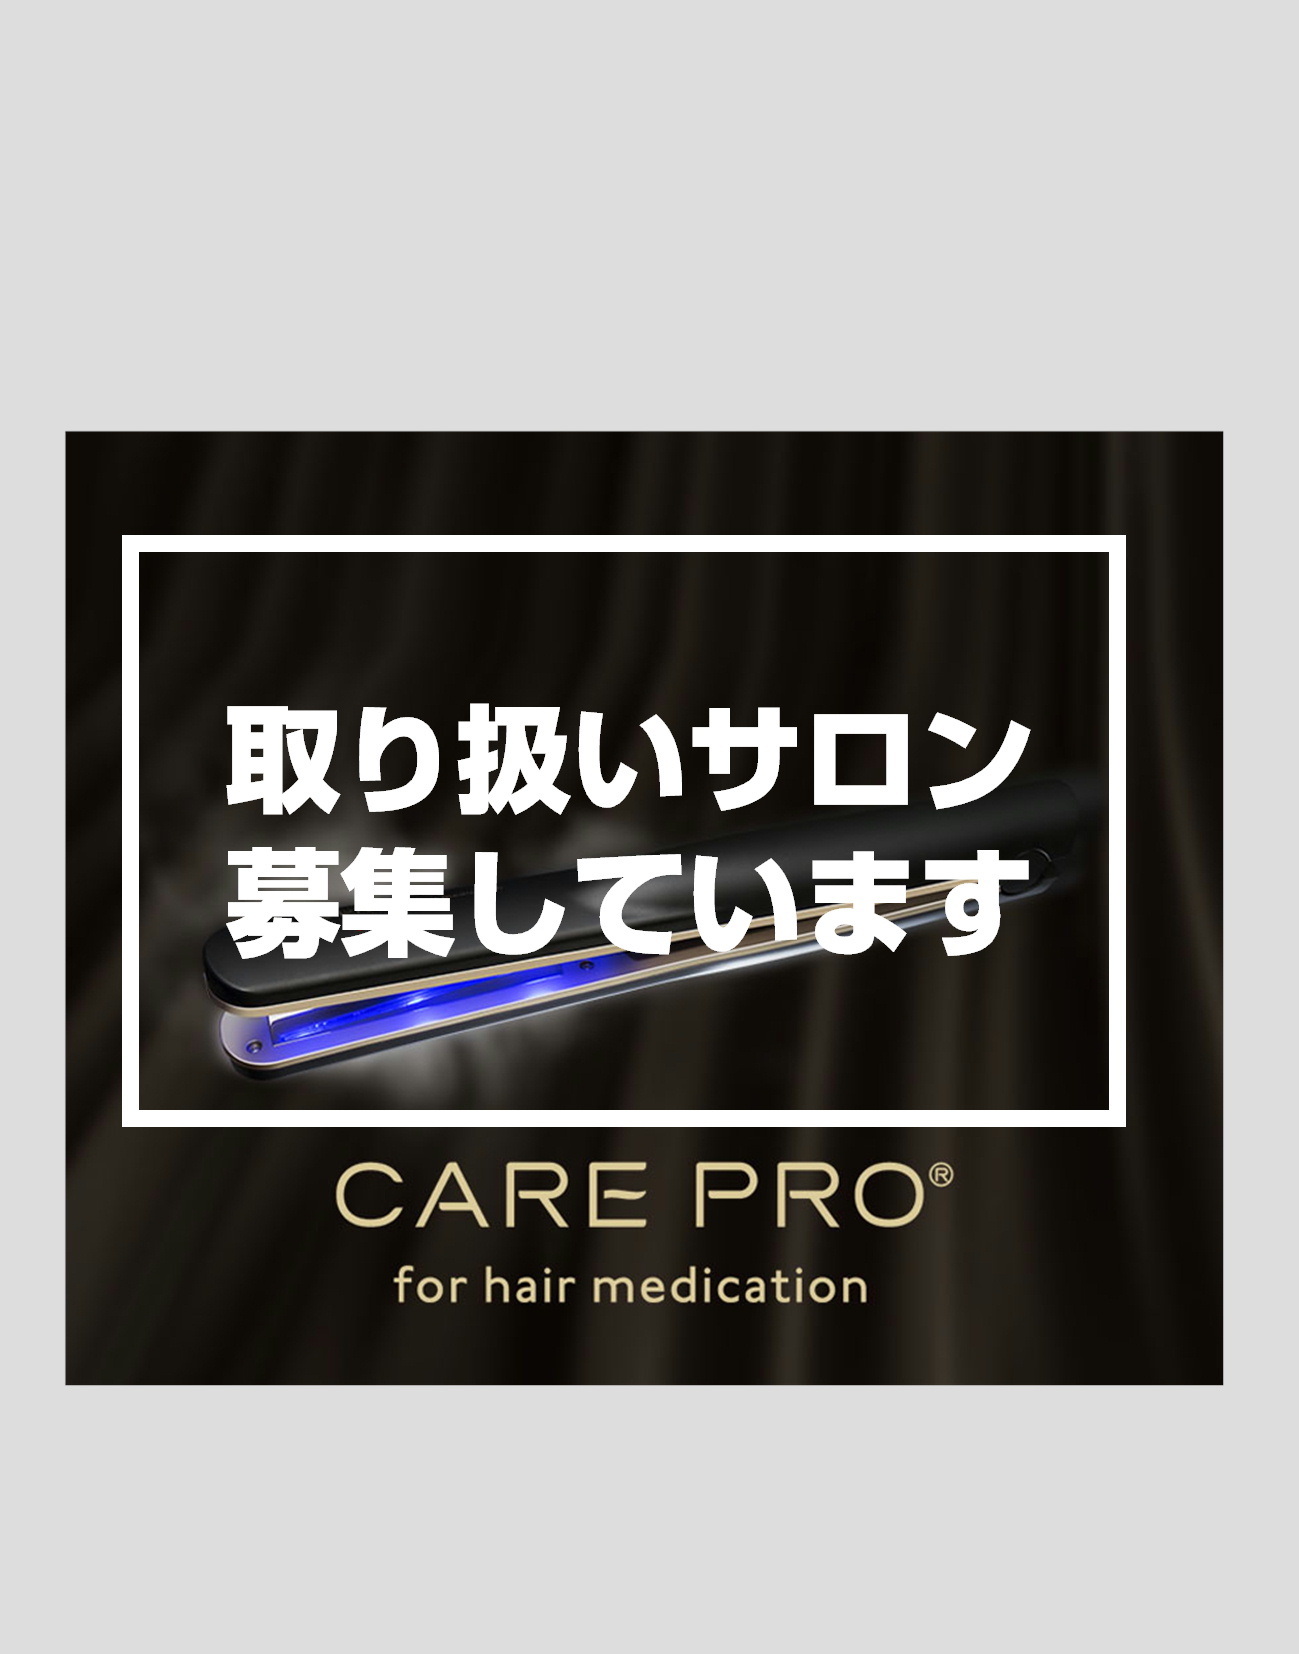 【サロン登録商品】プロフェッショナル専用超音波アイロン CARE PRO(ケアプロ)